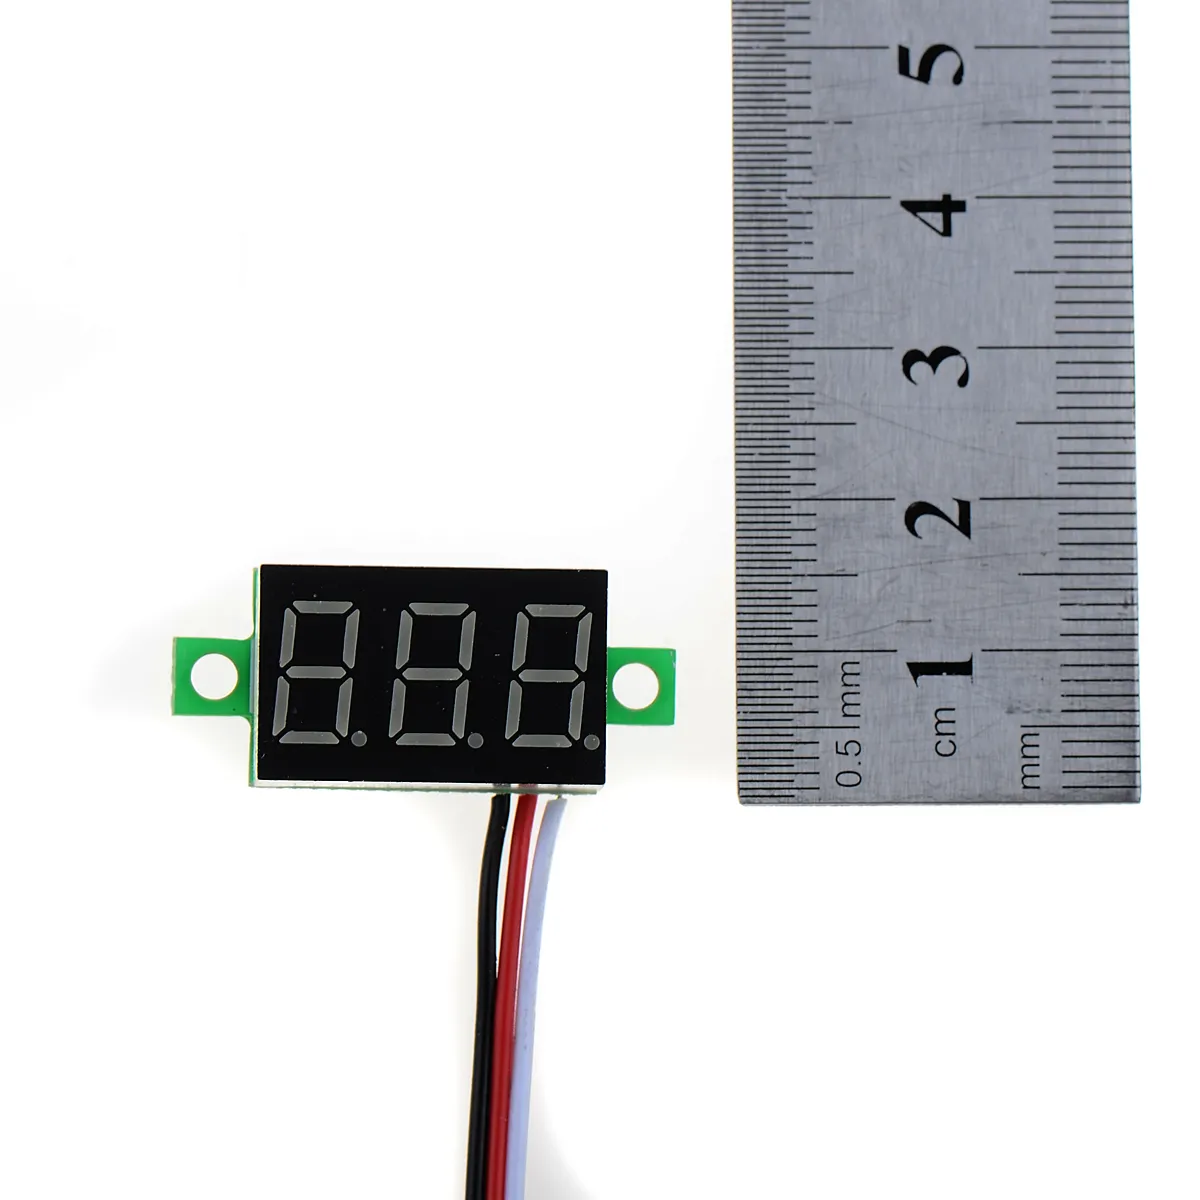 شاشة LED الأزرق مصغرة DC 0.1-30V الجهد الرقمي الفولتميتر لوحة دراجة نارية B00258